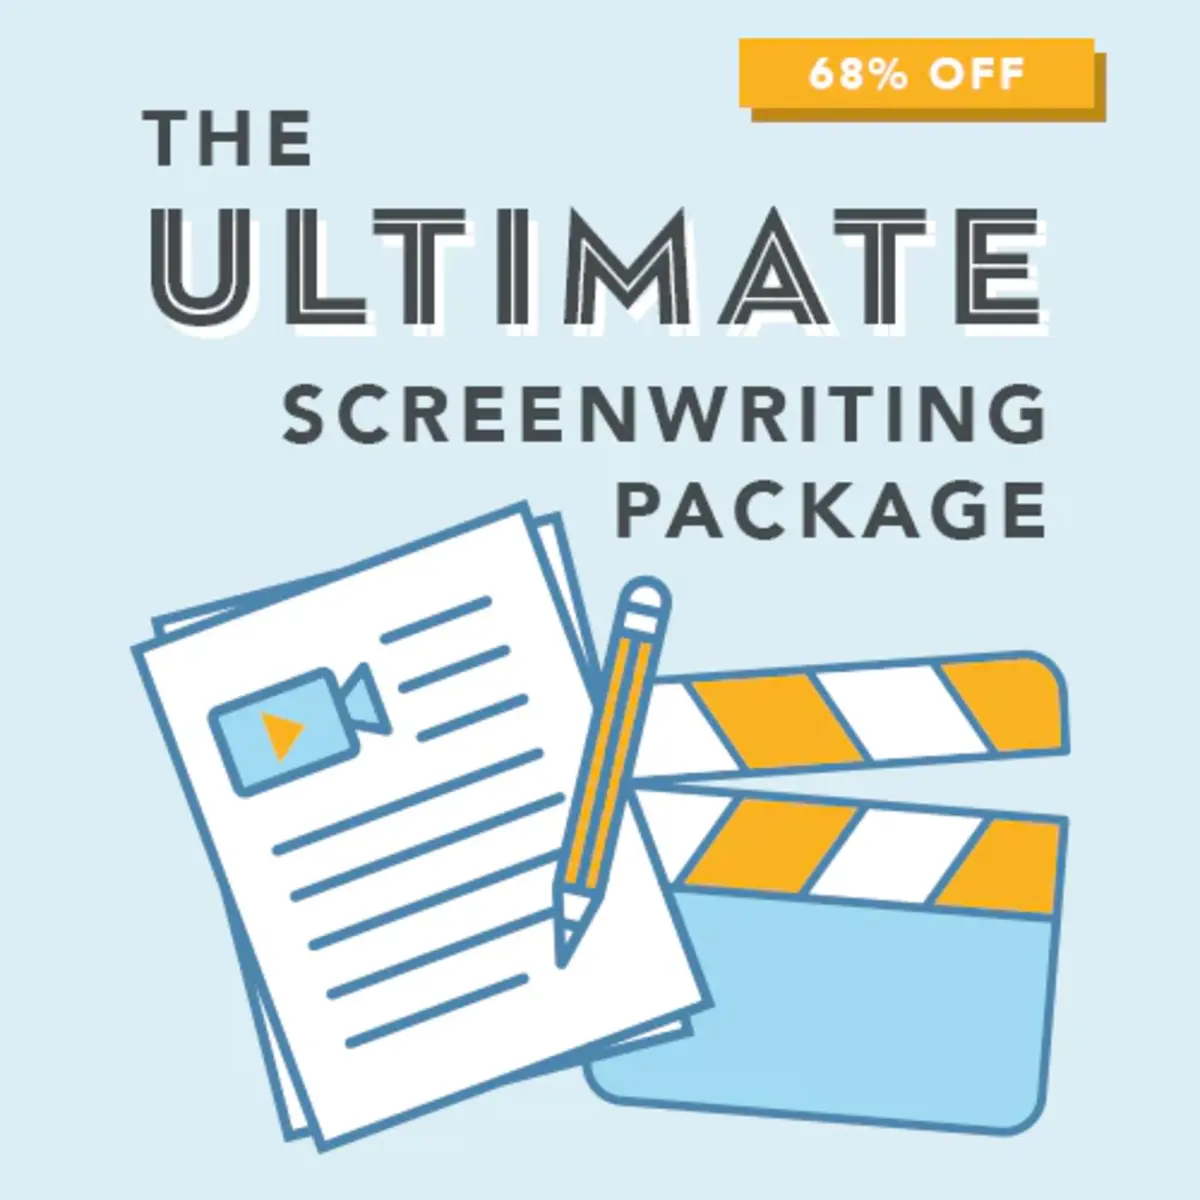 TWS-2021-UltimateScreenwritingPackage-500x500_2_720x